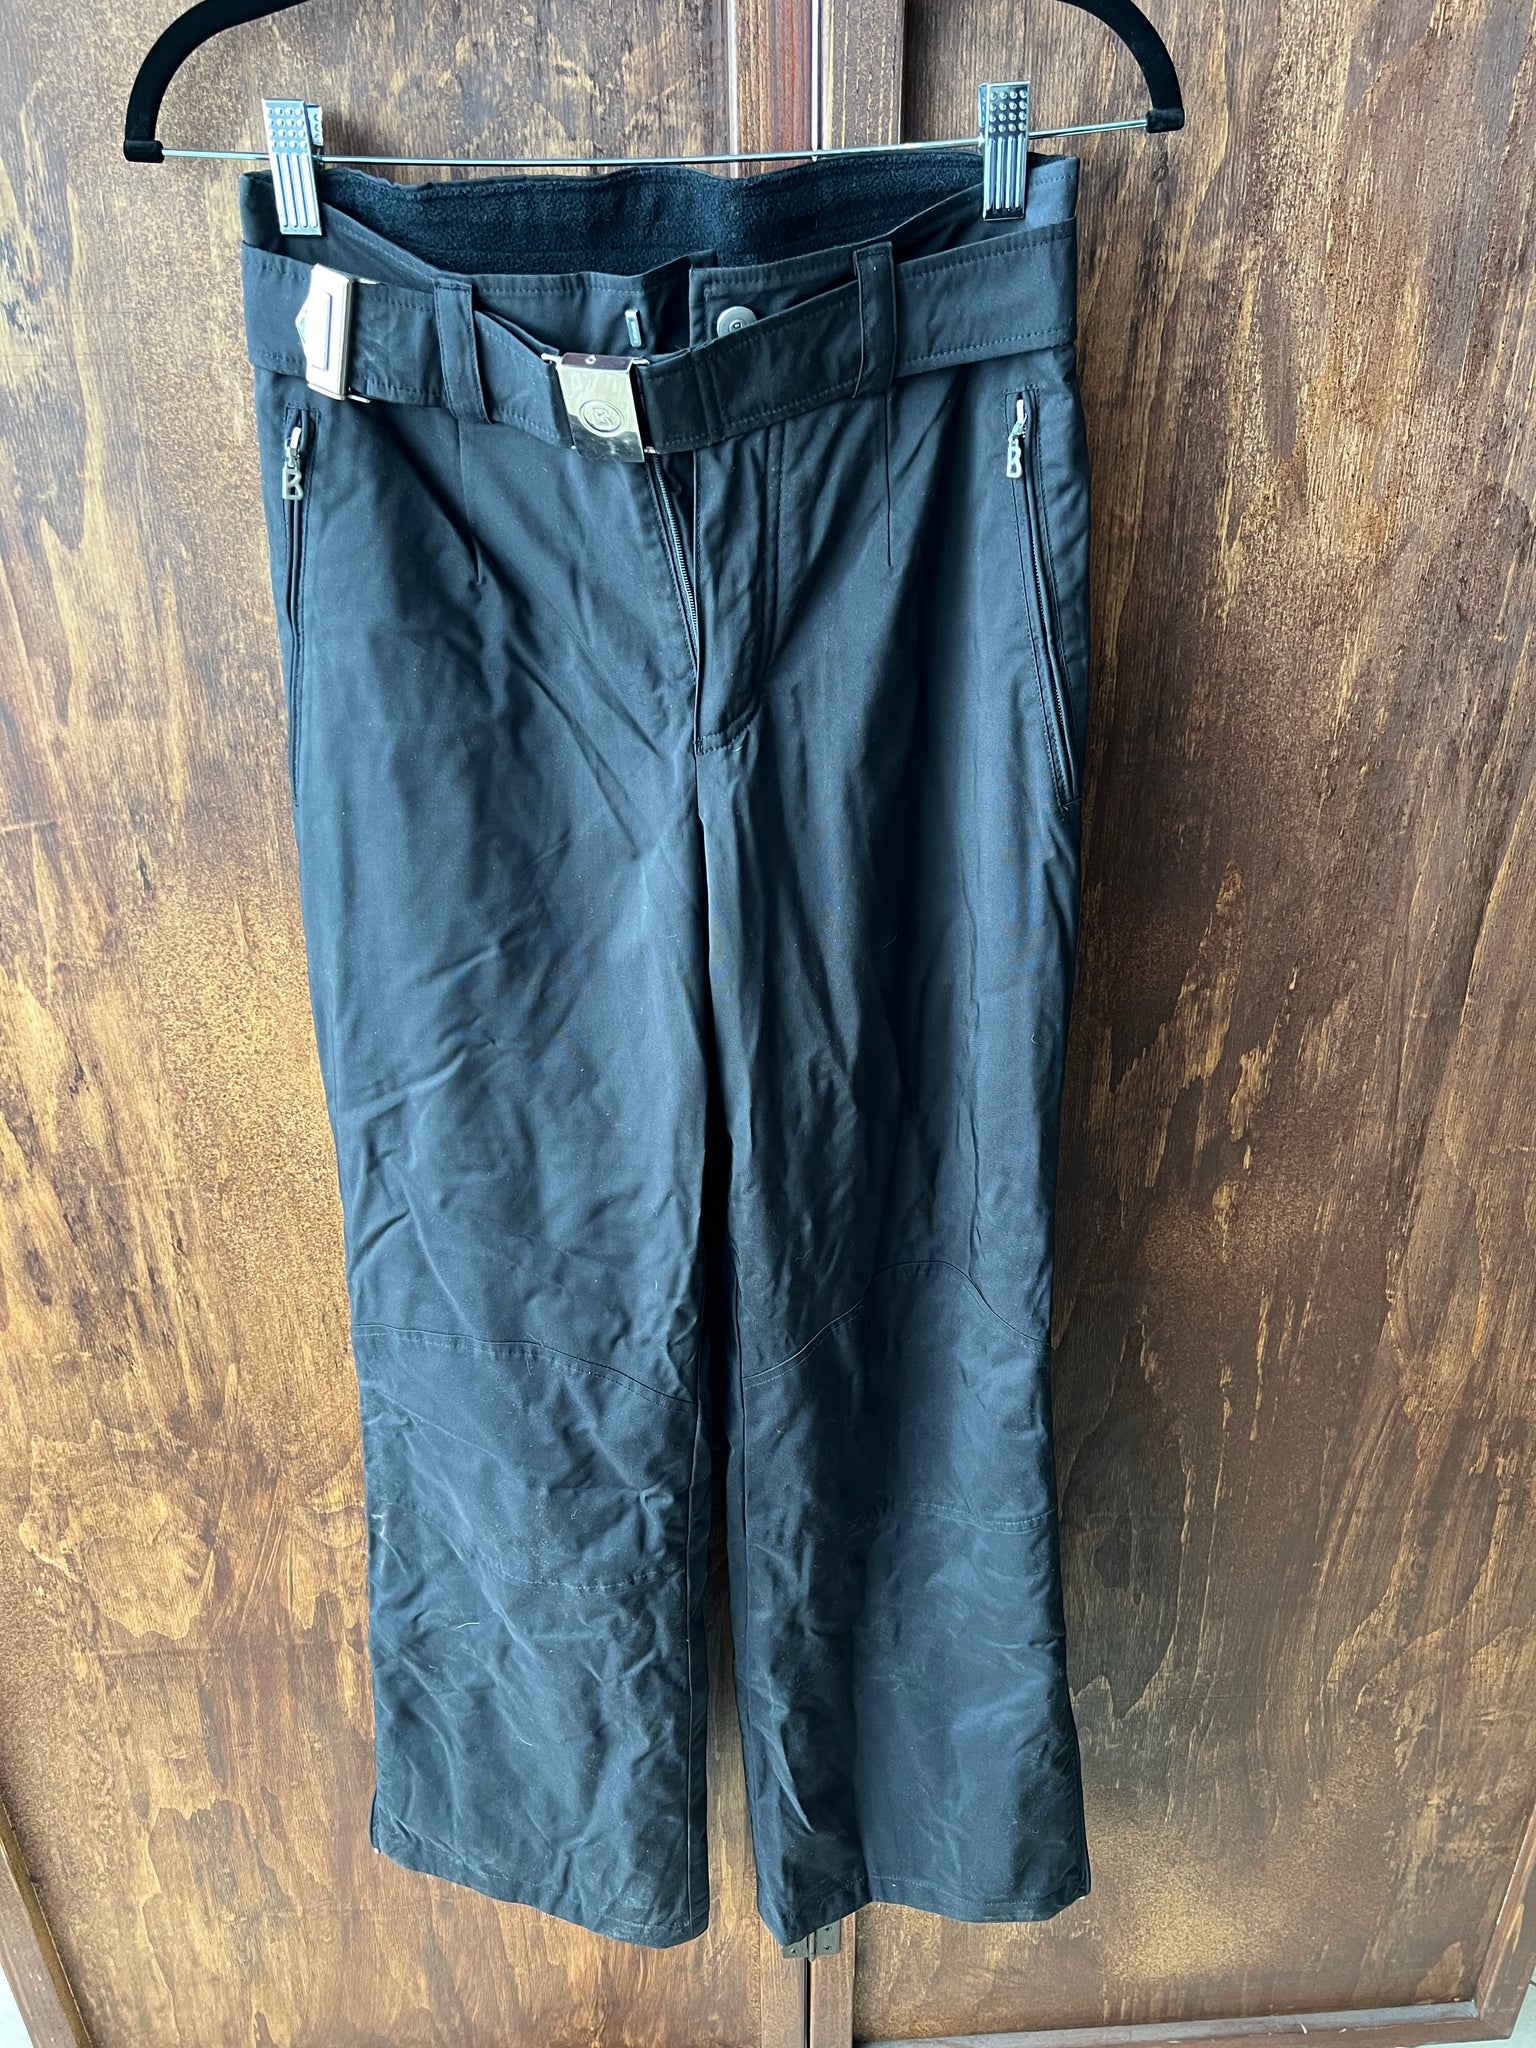 1990's SKI PANTS- Bogner black ski pant